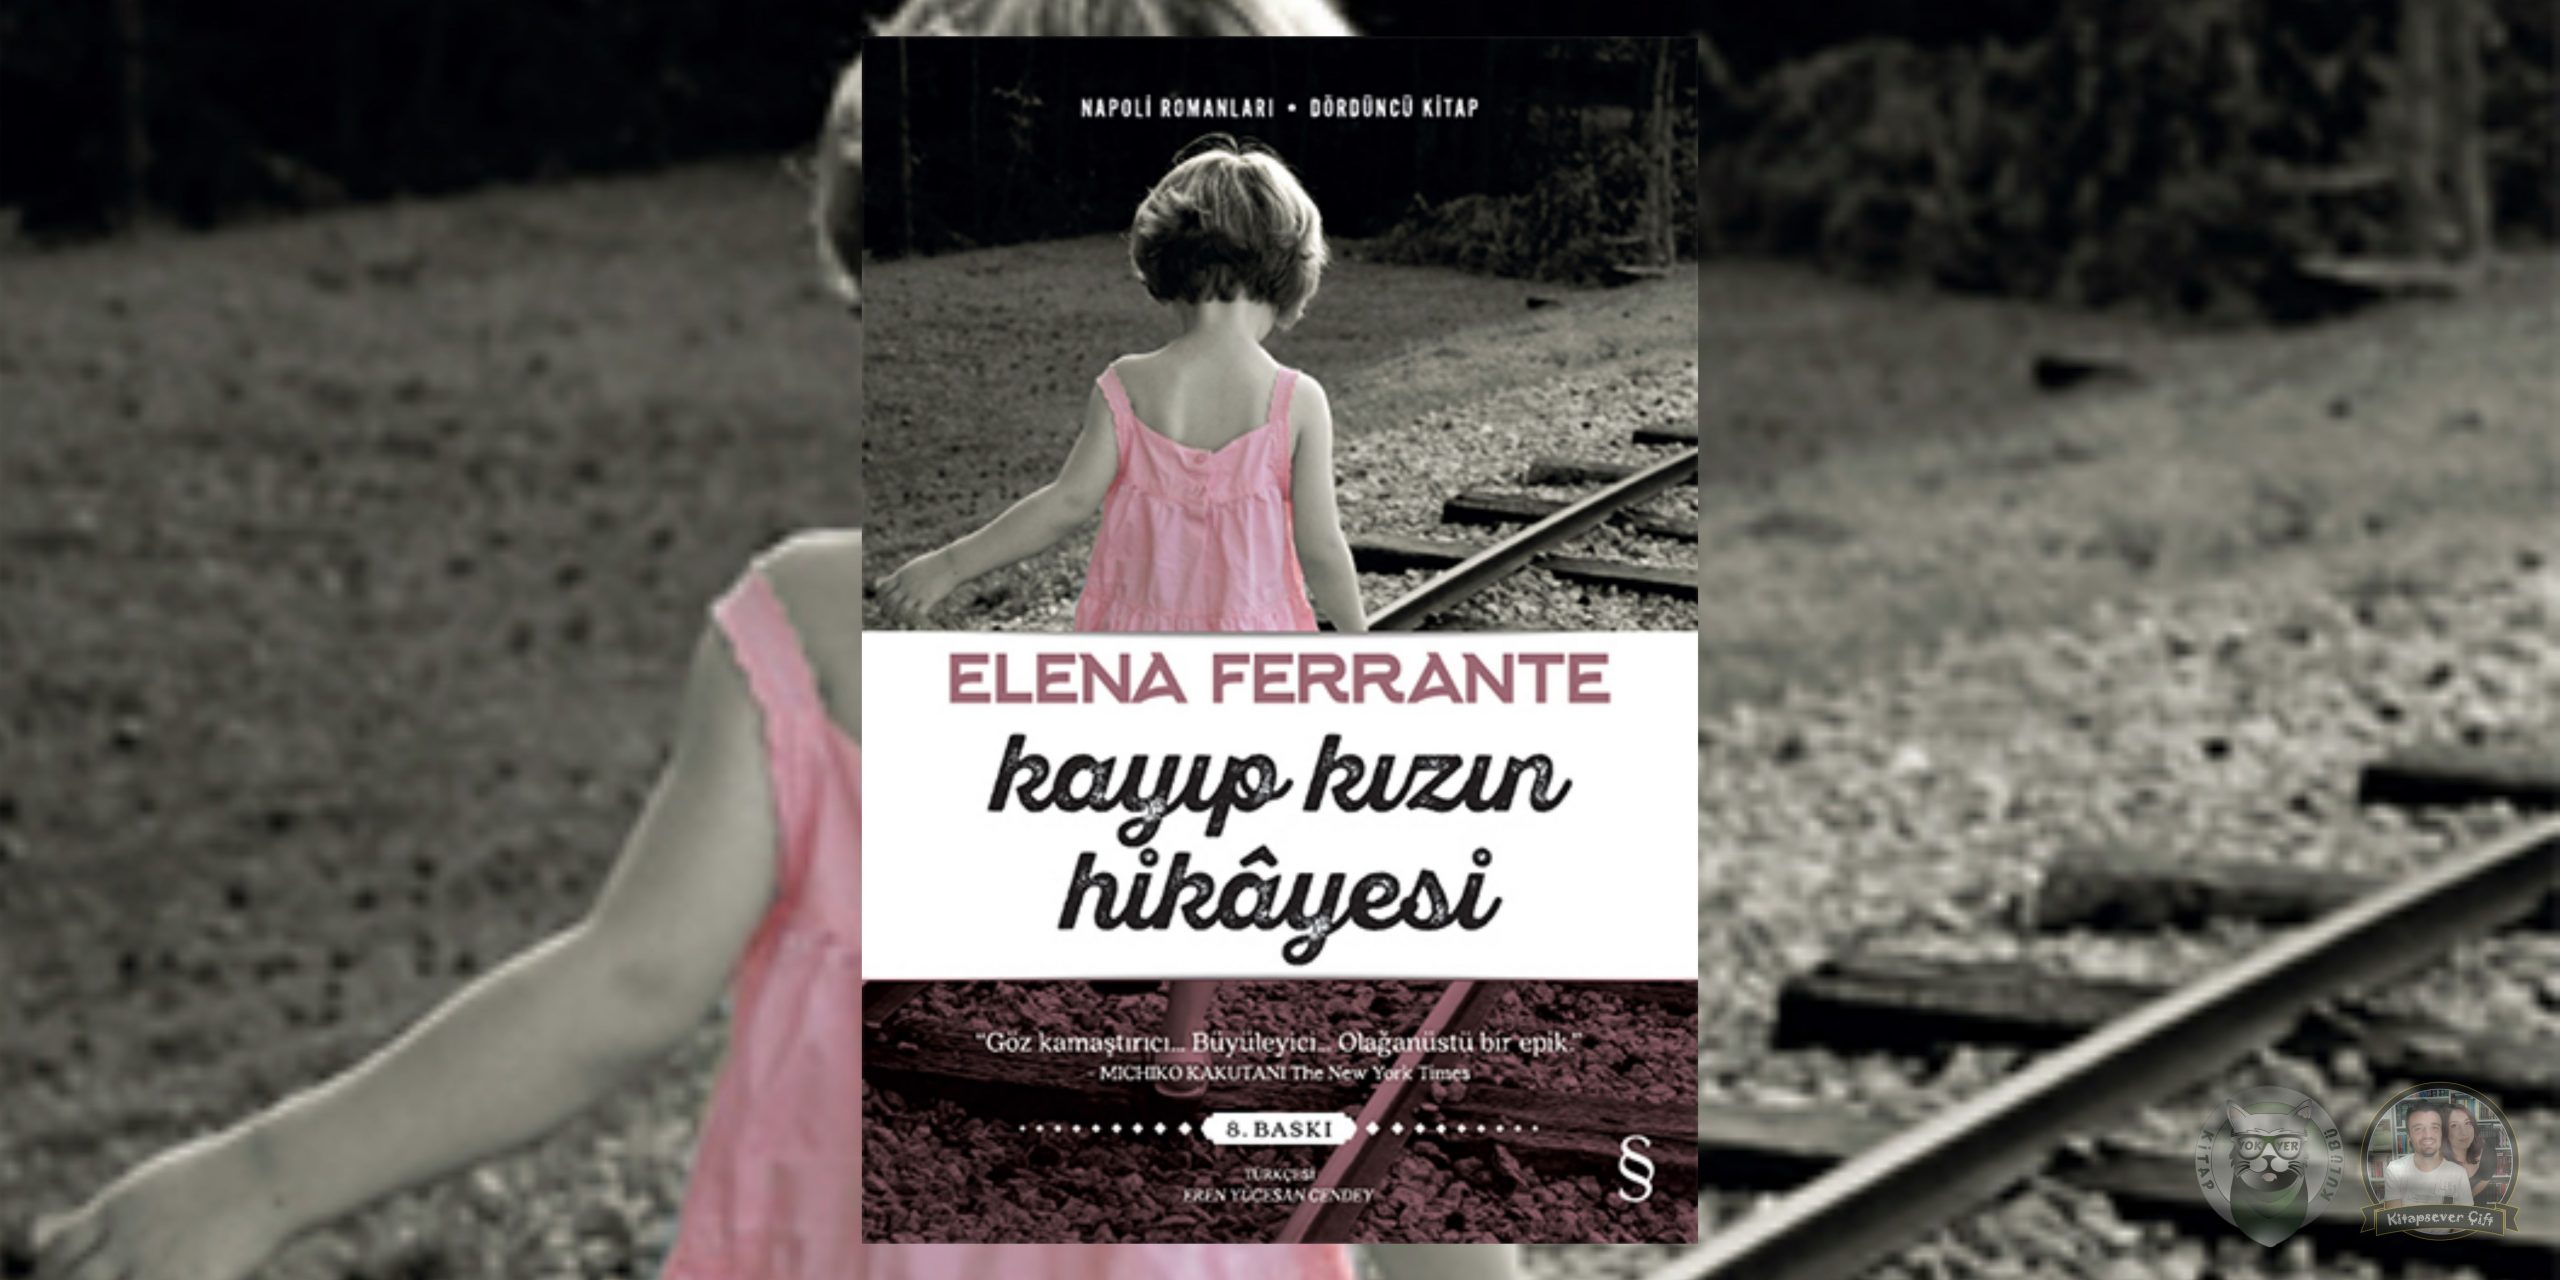 elena ferrante - napoli romanları serisi 4 – kayip kizin hikayesi scaled